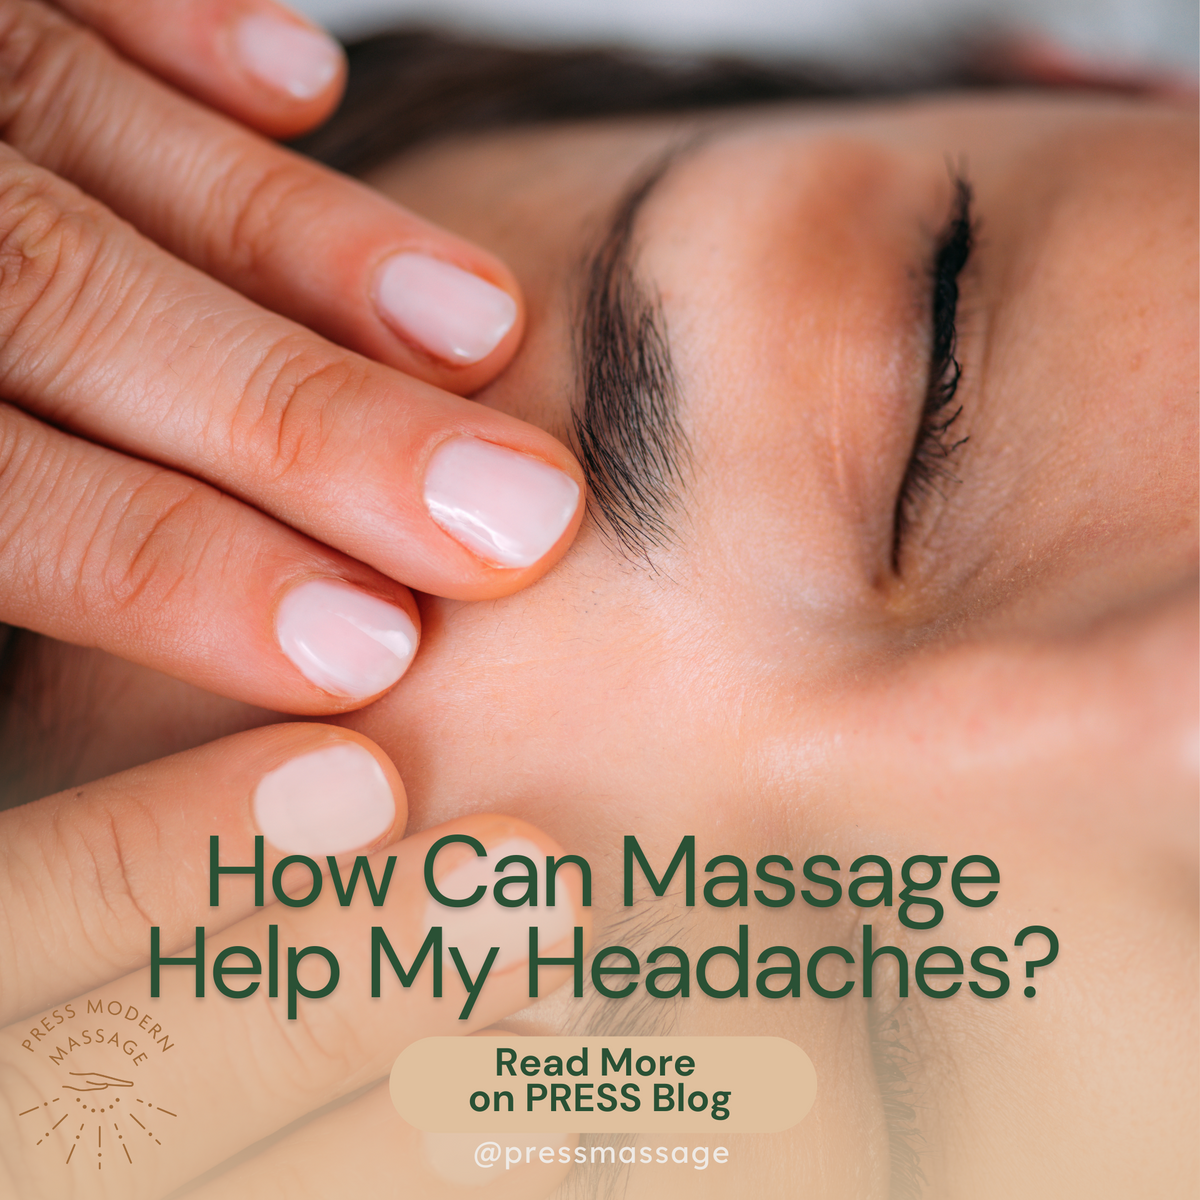 https://pressmodernmassage.com/cdn/shop/articles/How_Can_Massage_Help_My_Headaches__png_1200x.png?v=1666739689